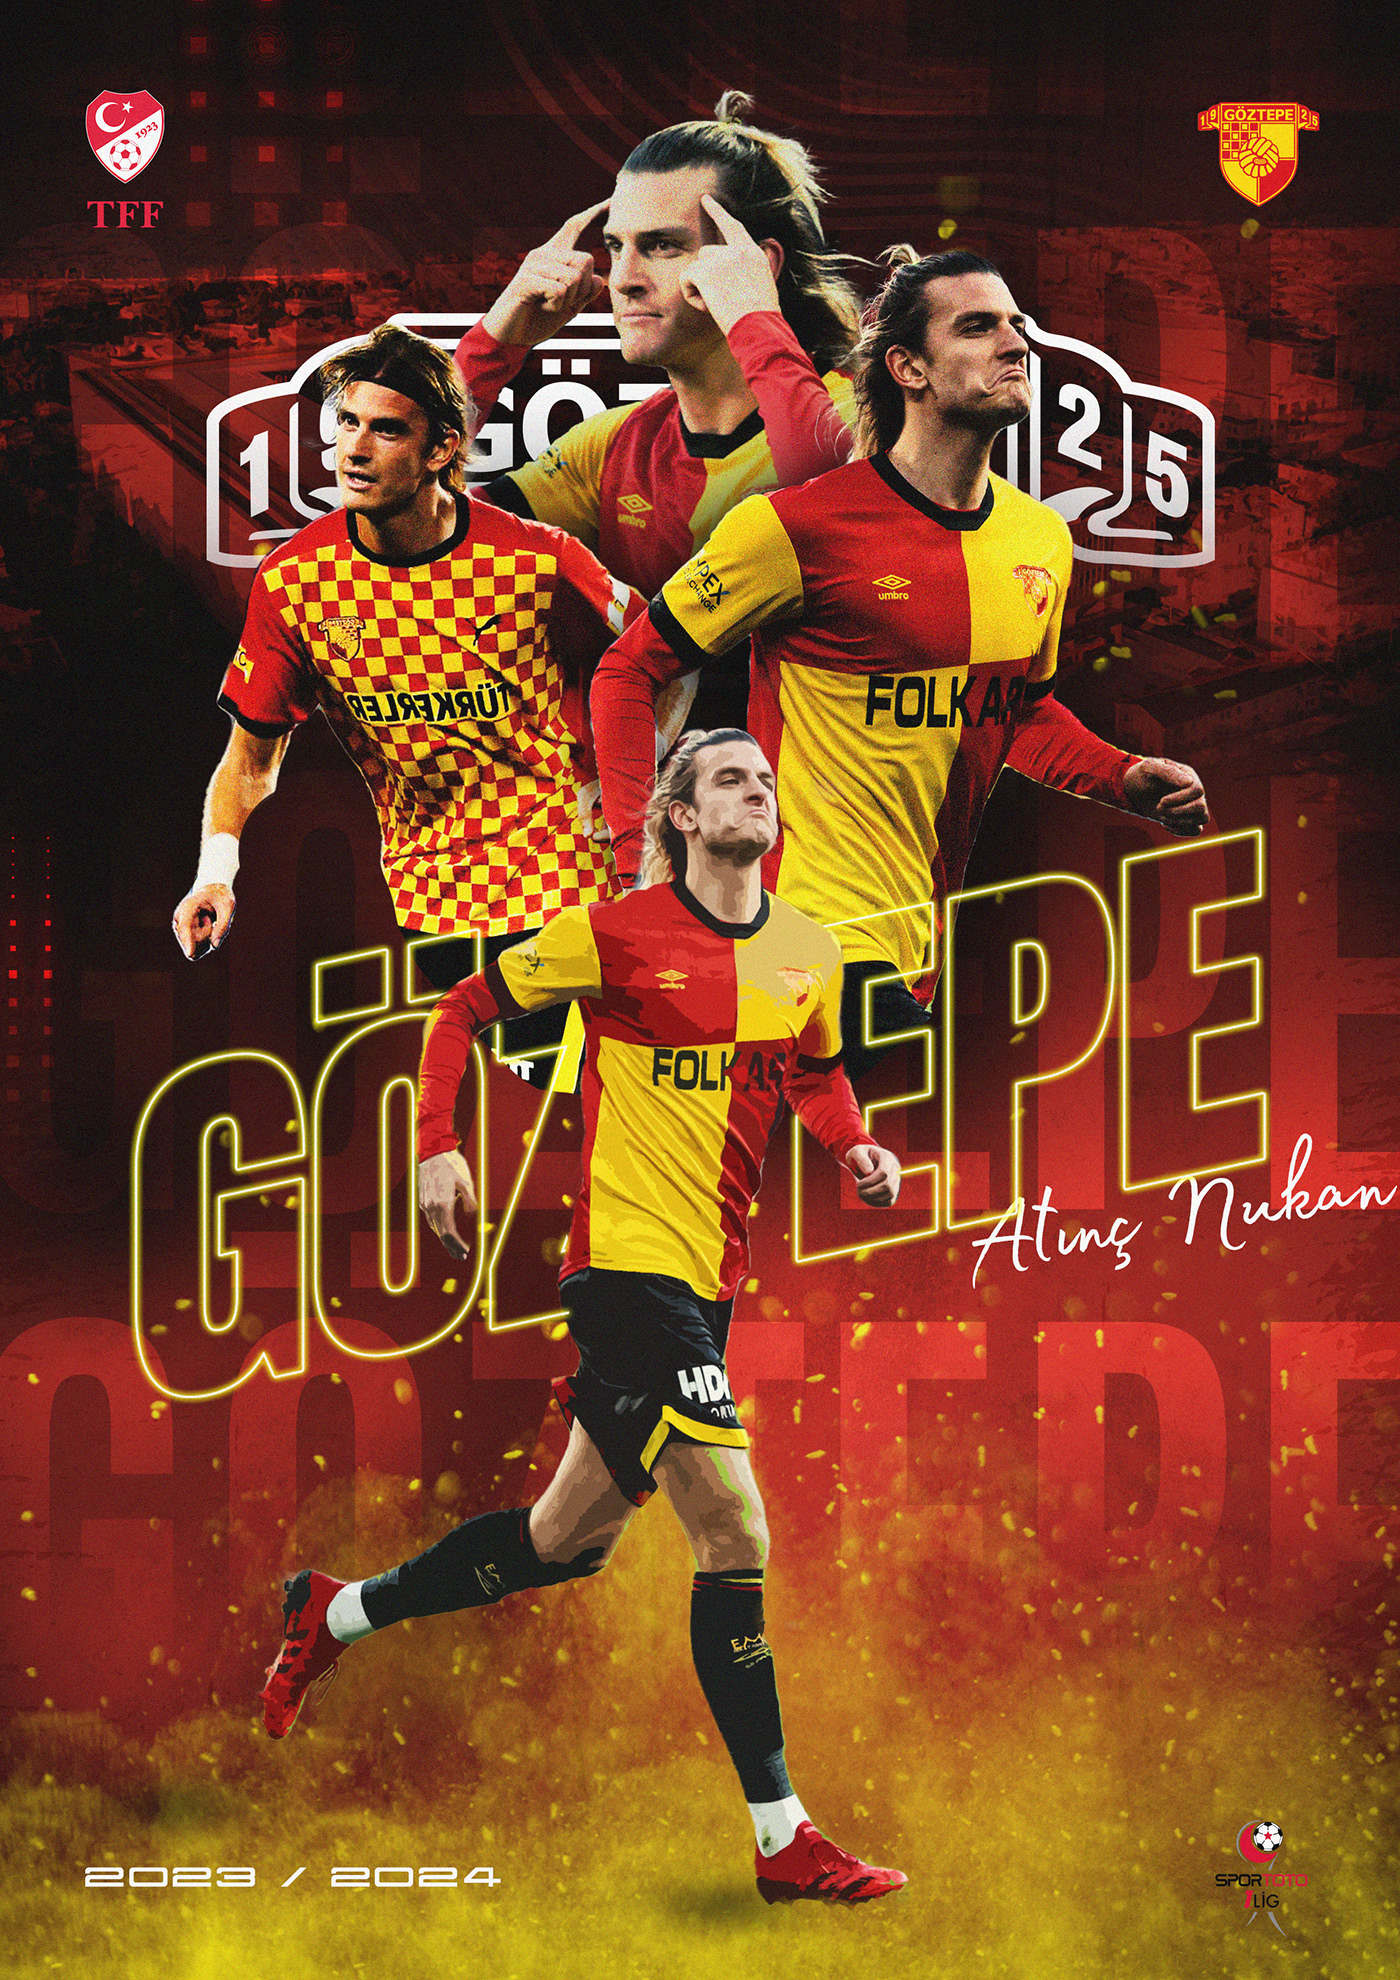 Göztepe tff Futbol football posters Poster Design Social media post poster art posterseries